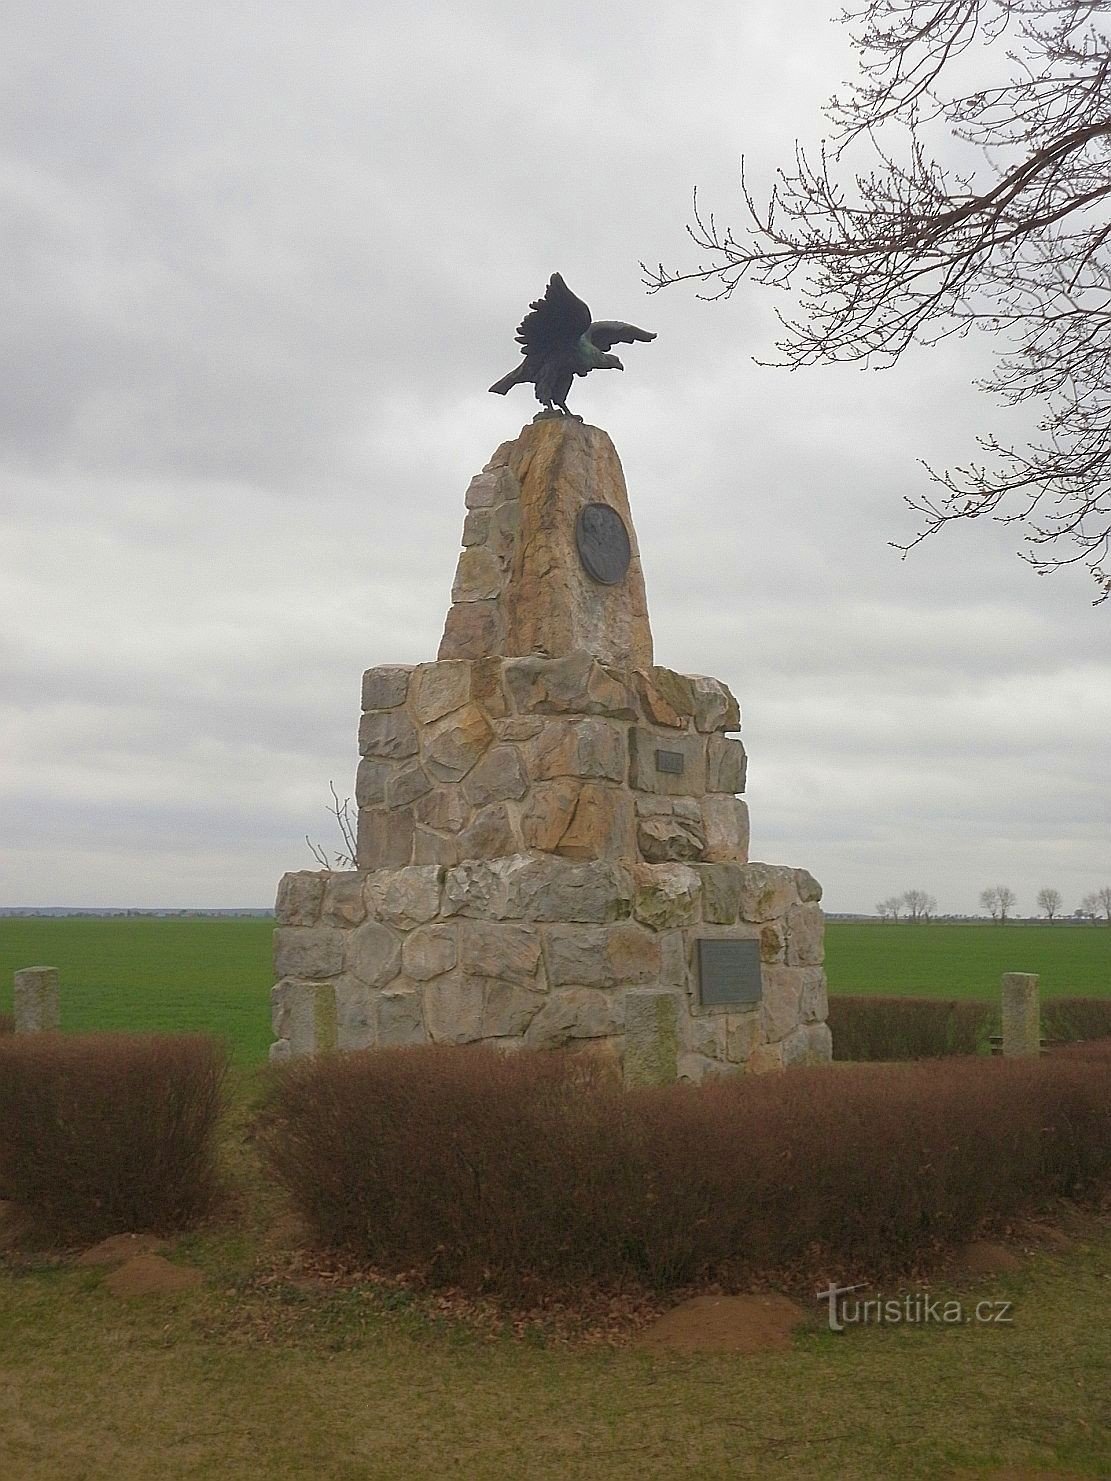 Monument voor de 100ste verjaardag van de bevrijdingsoorlog tegen Napoleon